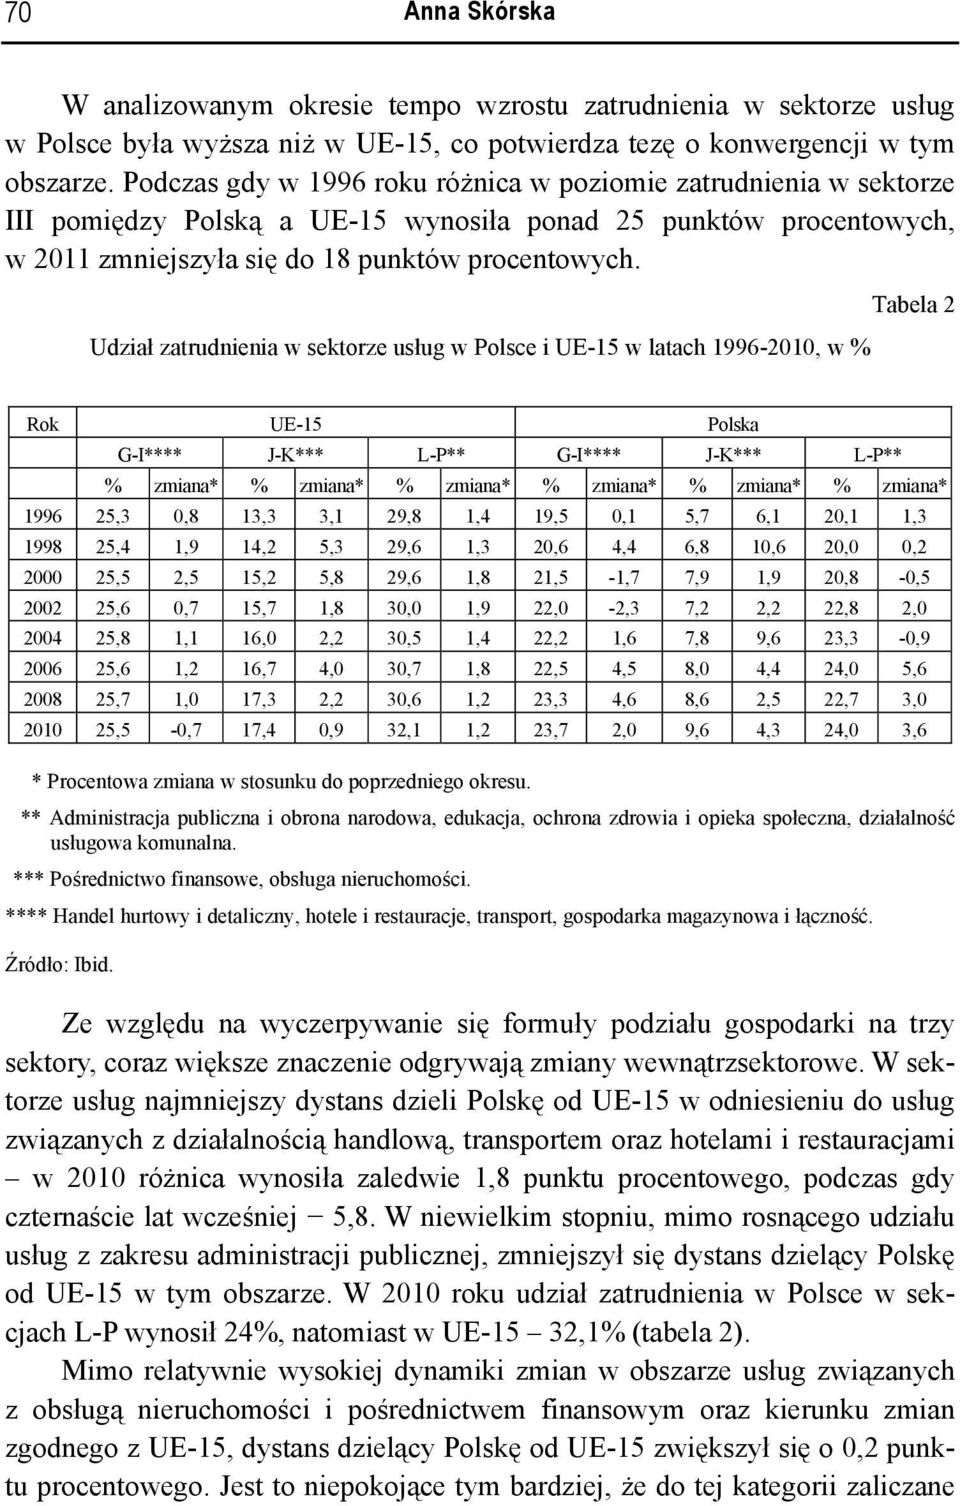 Udział zatrudnienia w sektorze usług w Polsce i UE-15 w latach 1996-2010, w % Tabela 2 Rok UE-15 Polska G-I**** J-K*** L-P** G-I**** J-K*** L-P** % zmiana* % zmiana* % zmiana* % zmiana* % zmiana* %